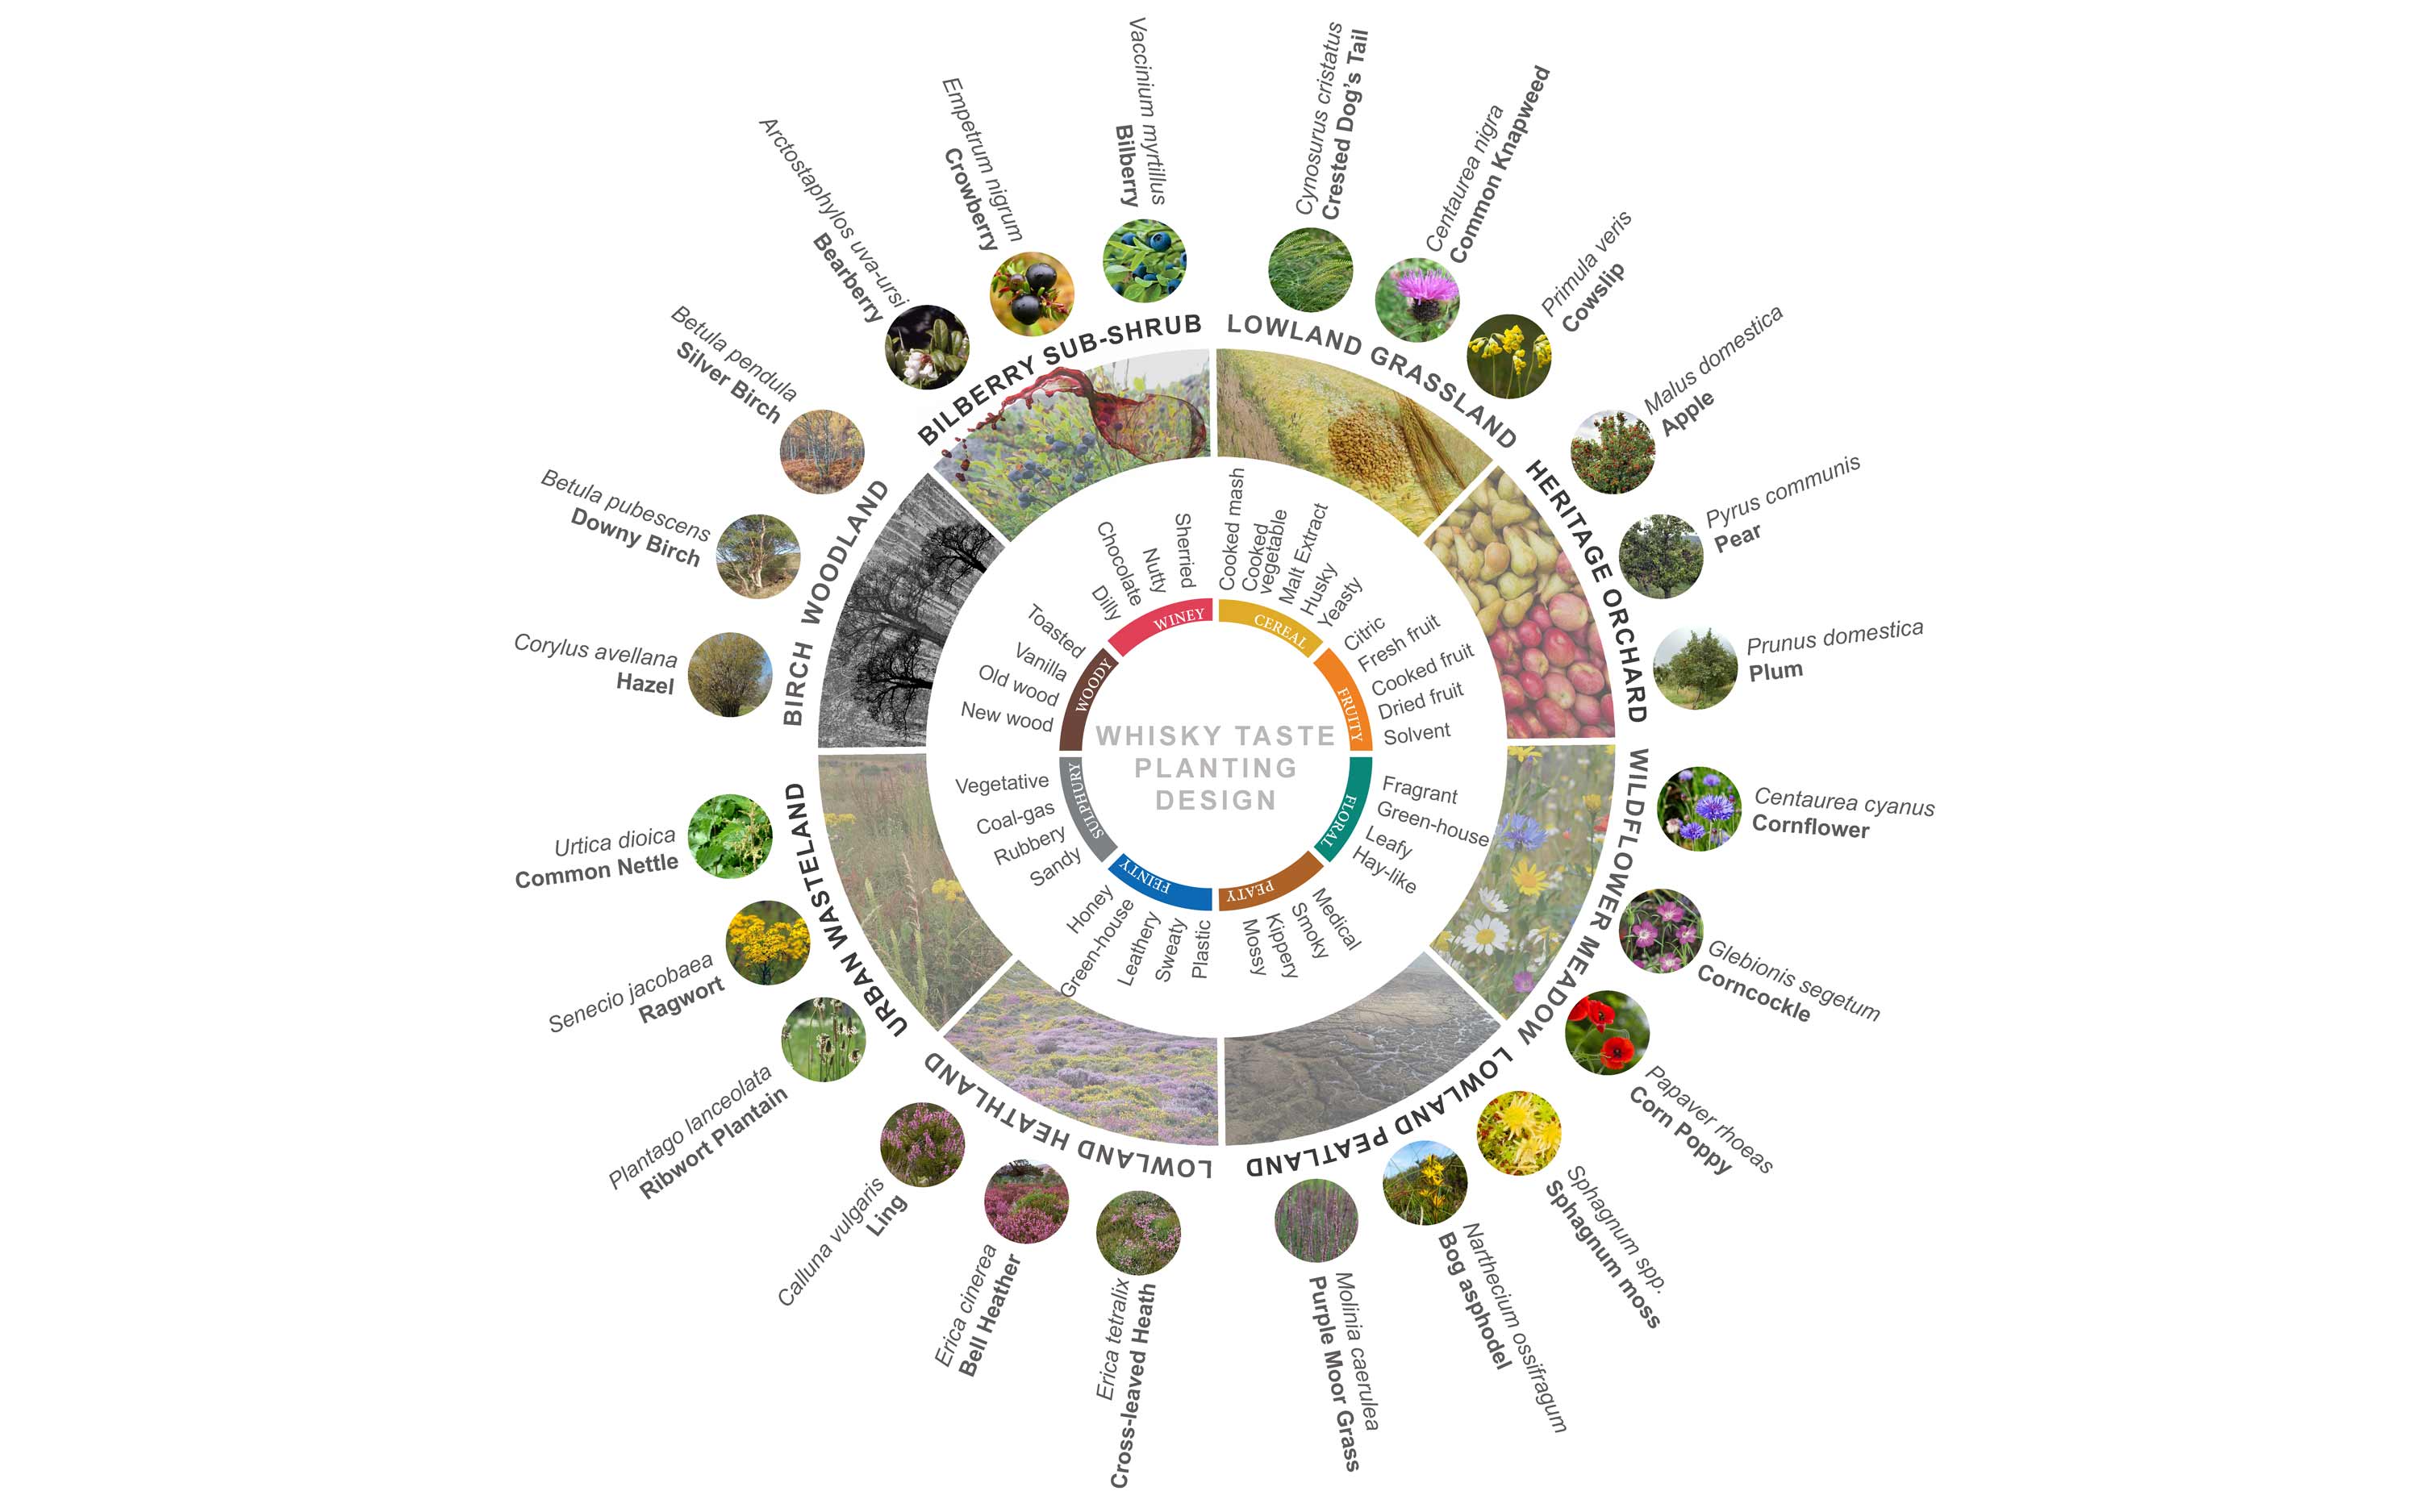 Whisky Taste Planting Wheel / mosaic of designed habitats creation